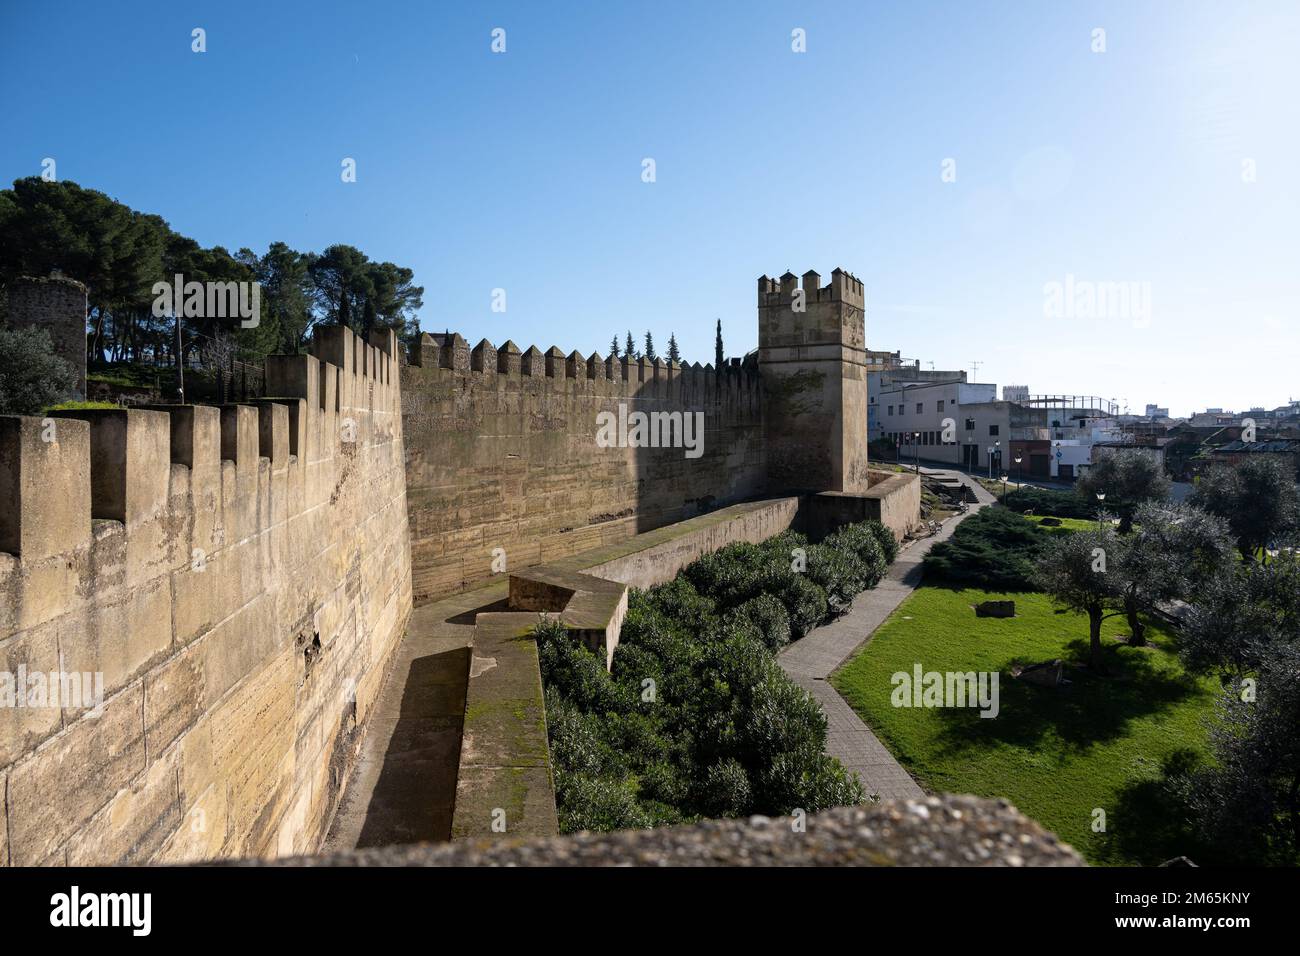 Die Alcazaba von Badajoz, eine alte maurische Zitadelle in Extremadura, Spanien Stockfoto